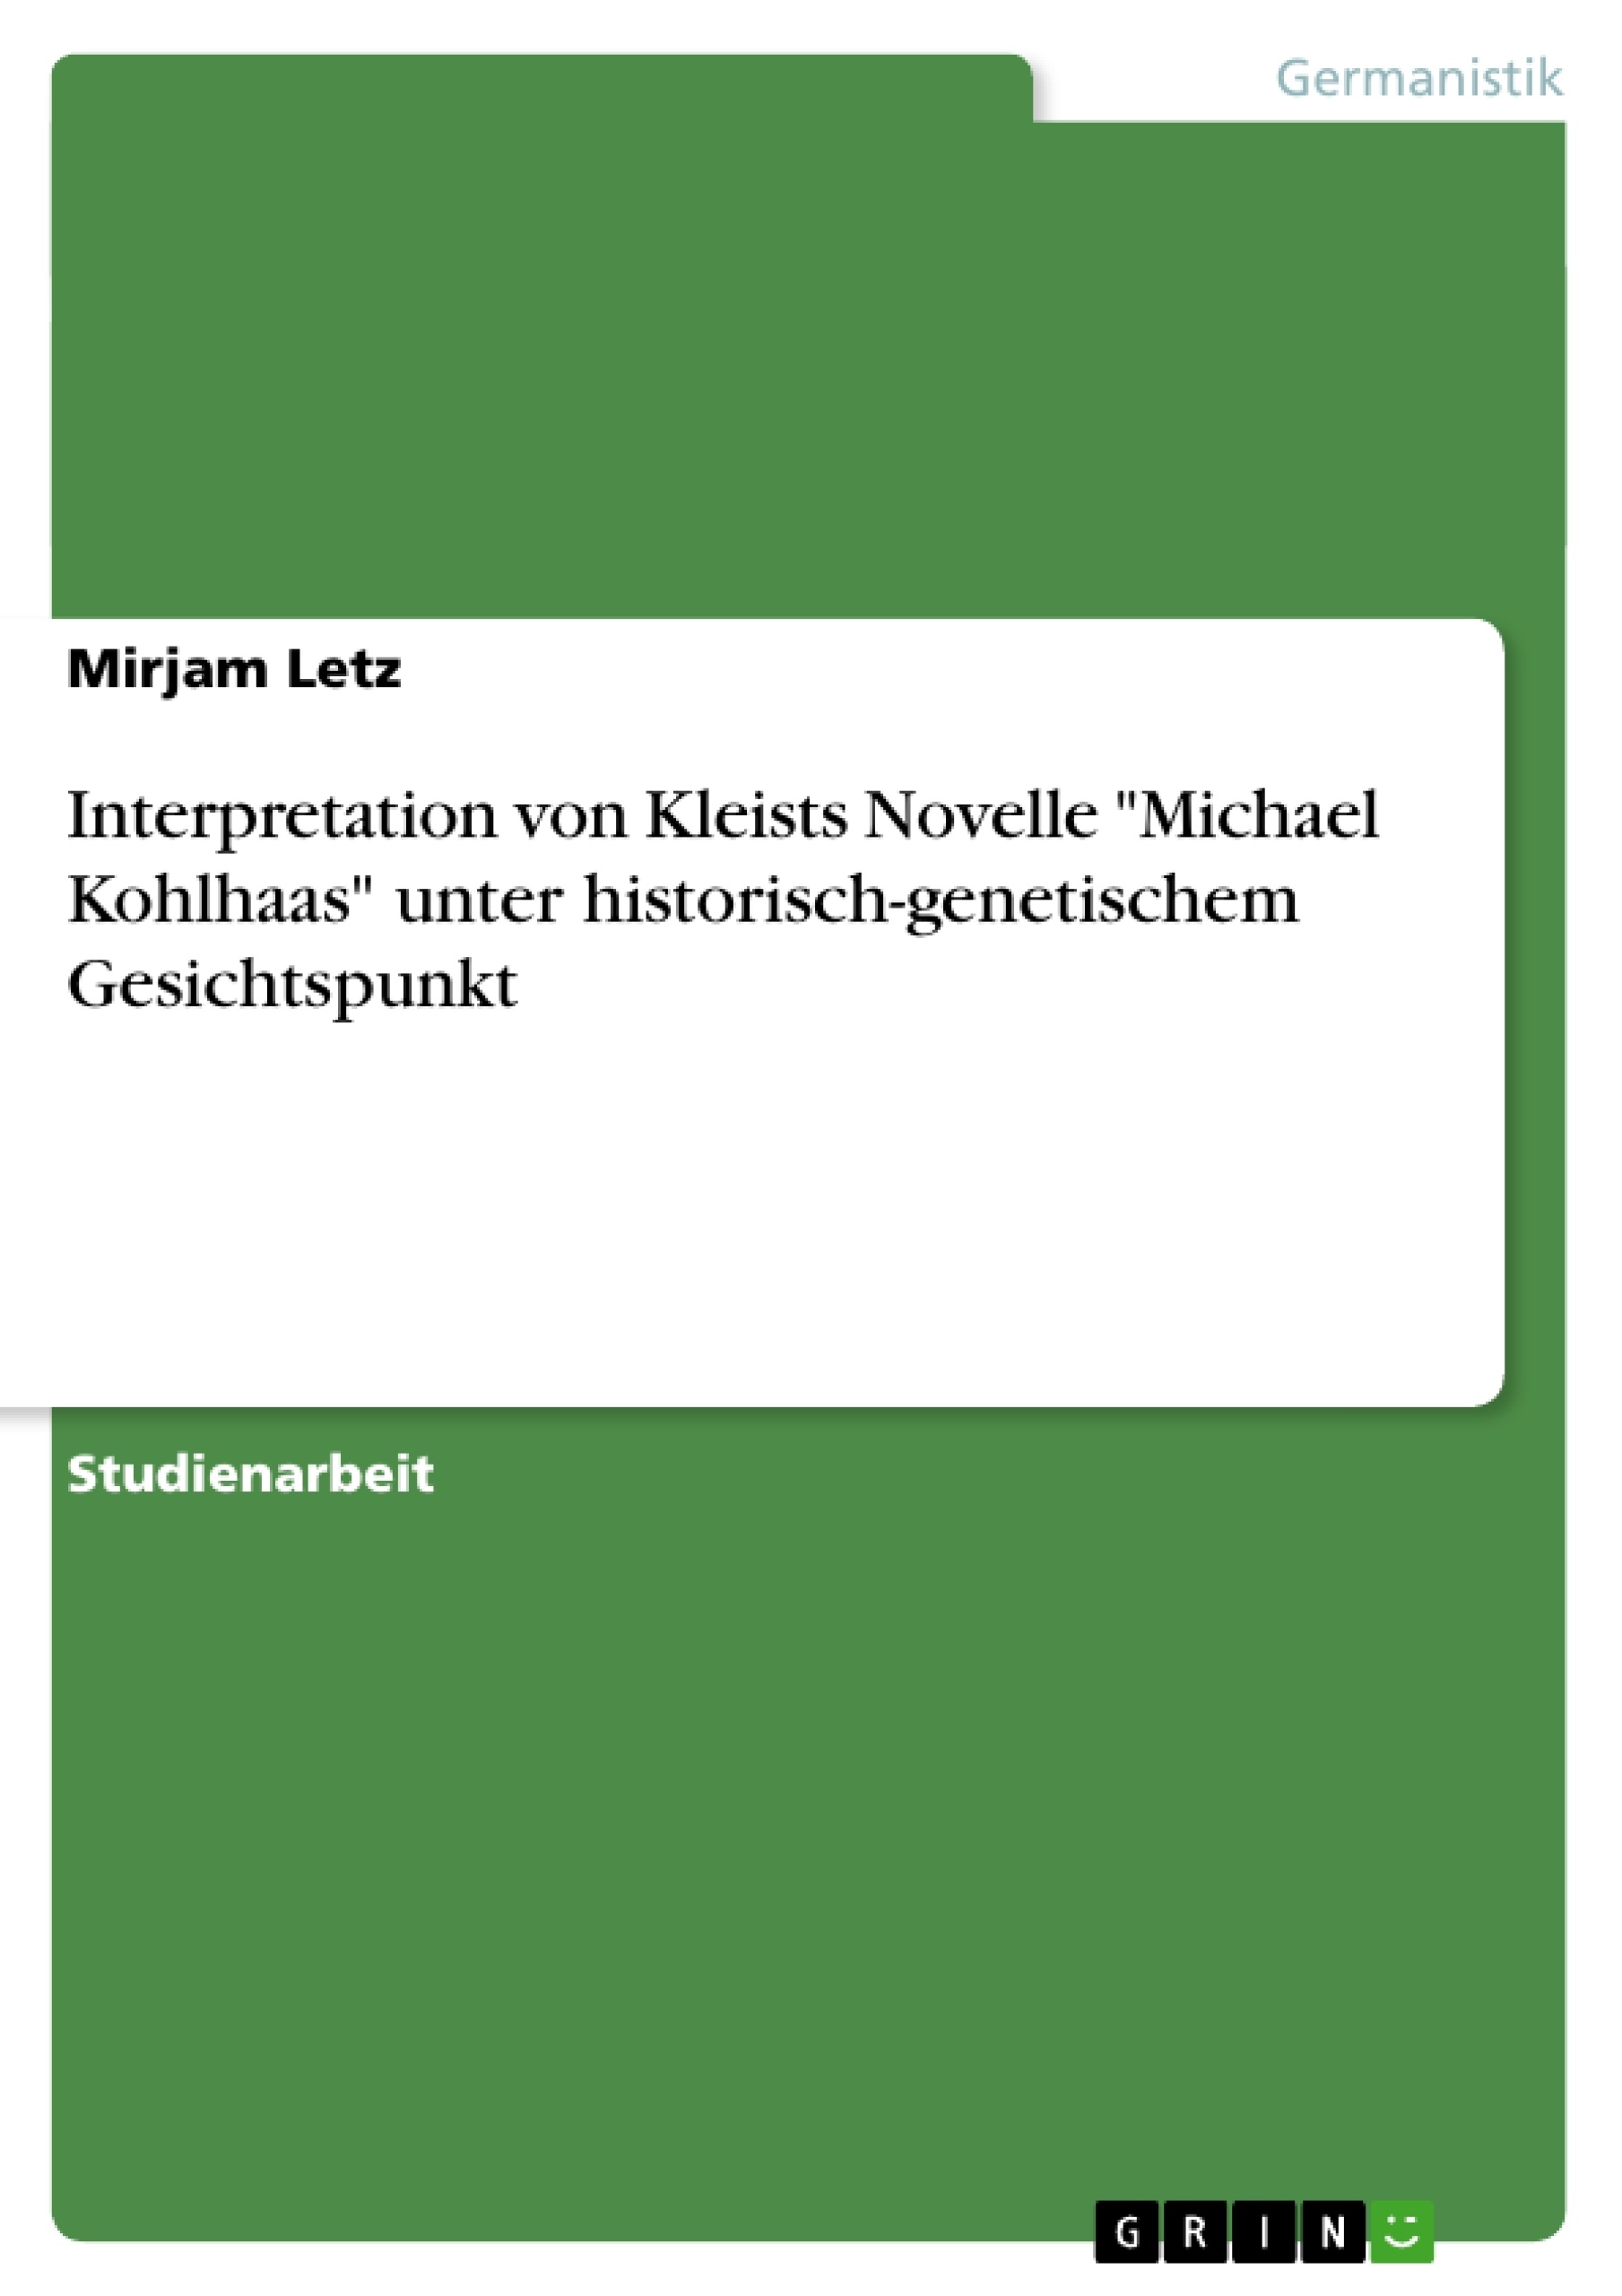 Título: Interpretation von Kleists Novelle "Michael Kohlhaas" unter historisch-genetischem Gesichtspunkt